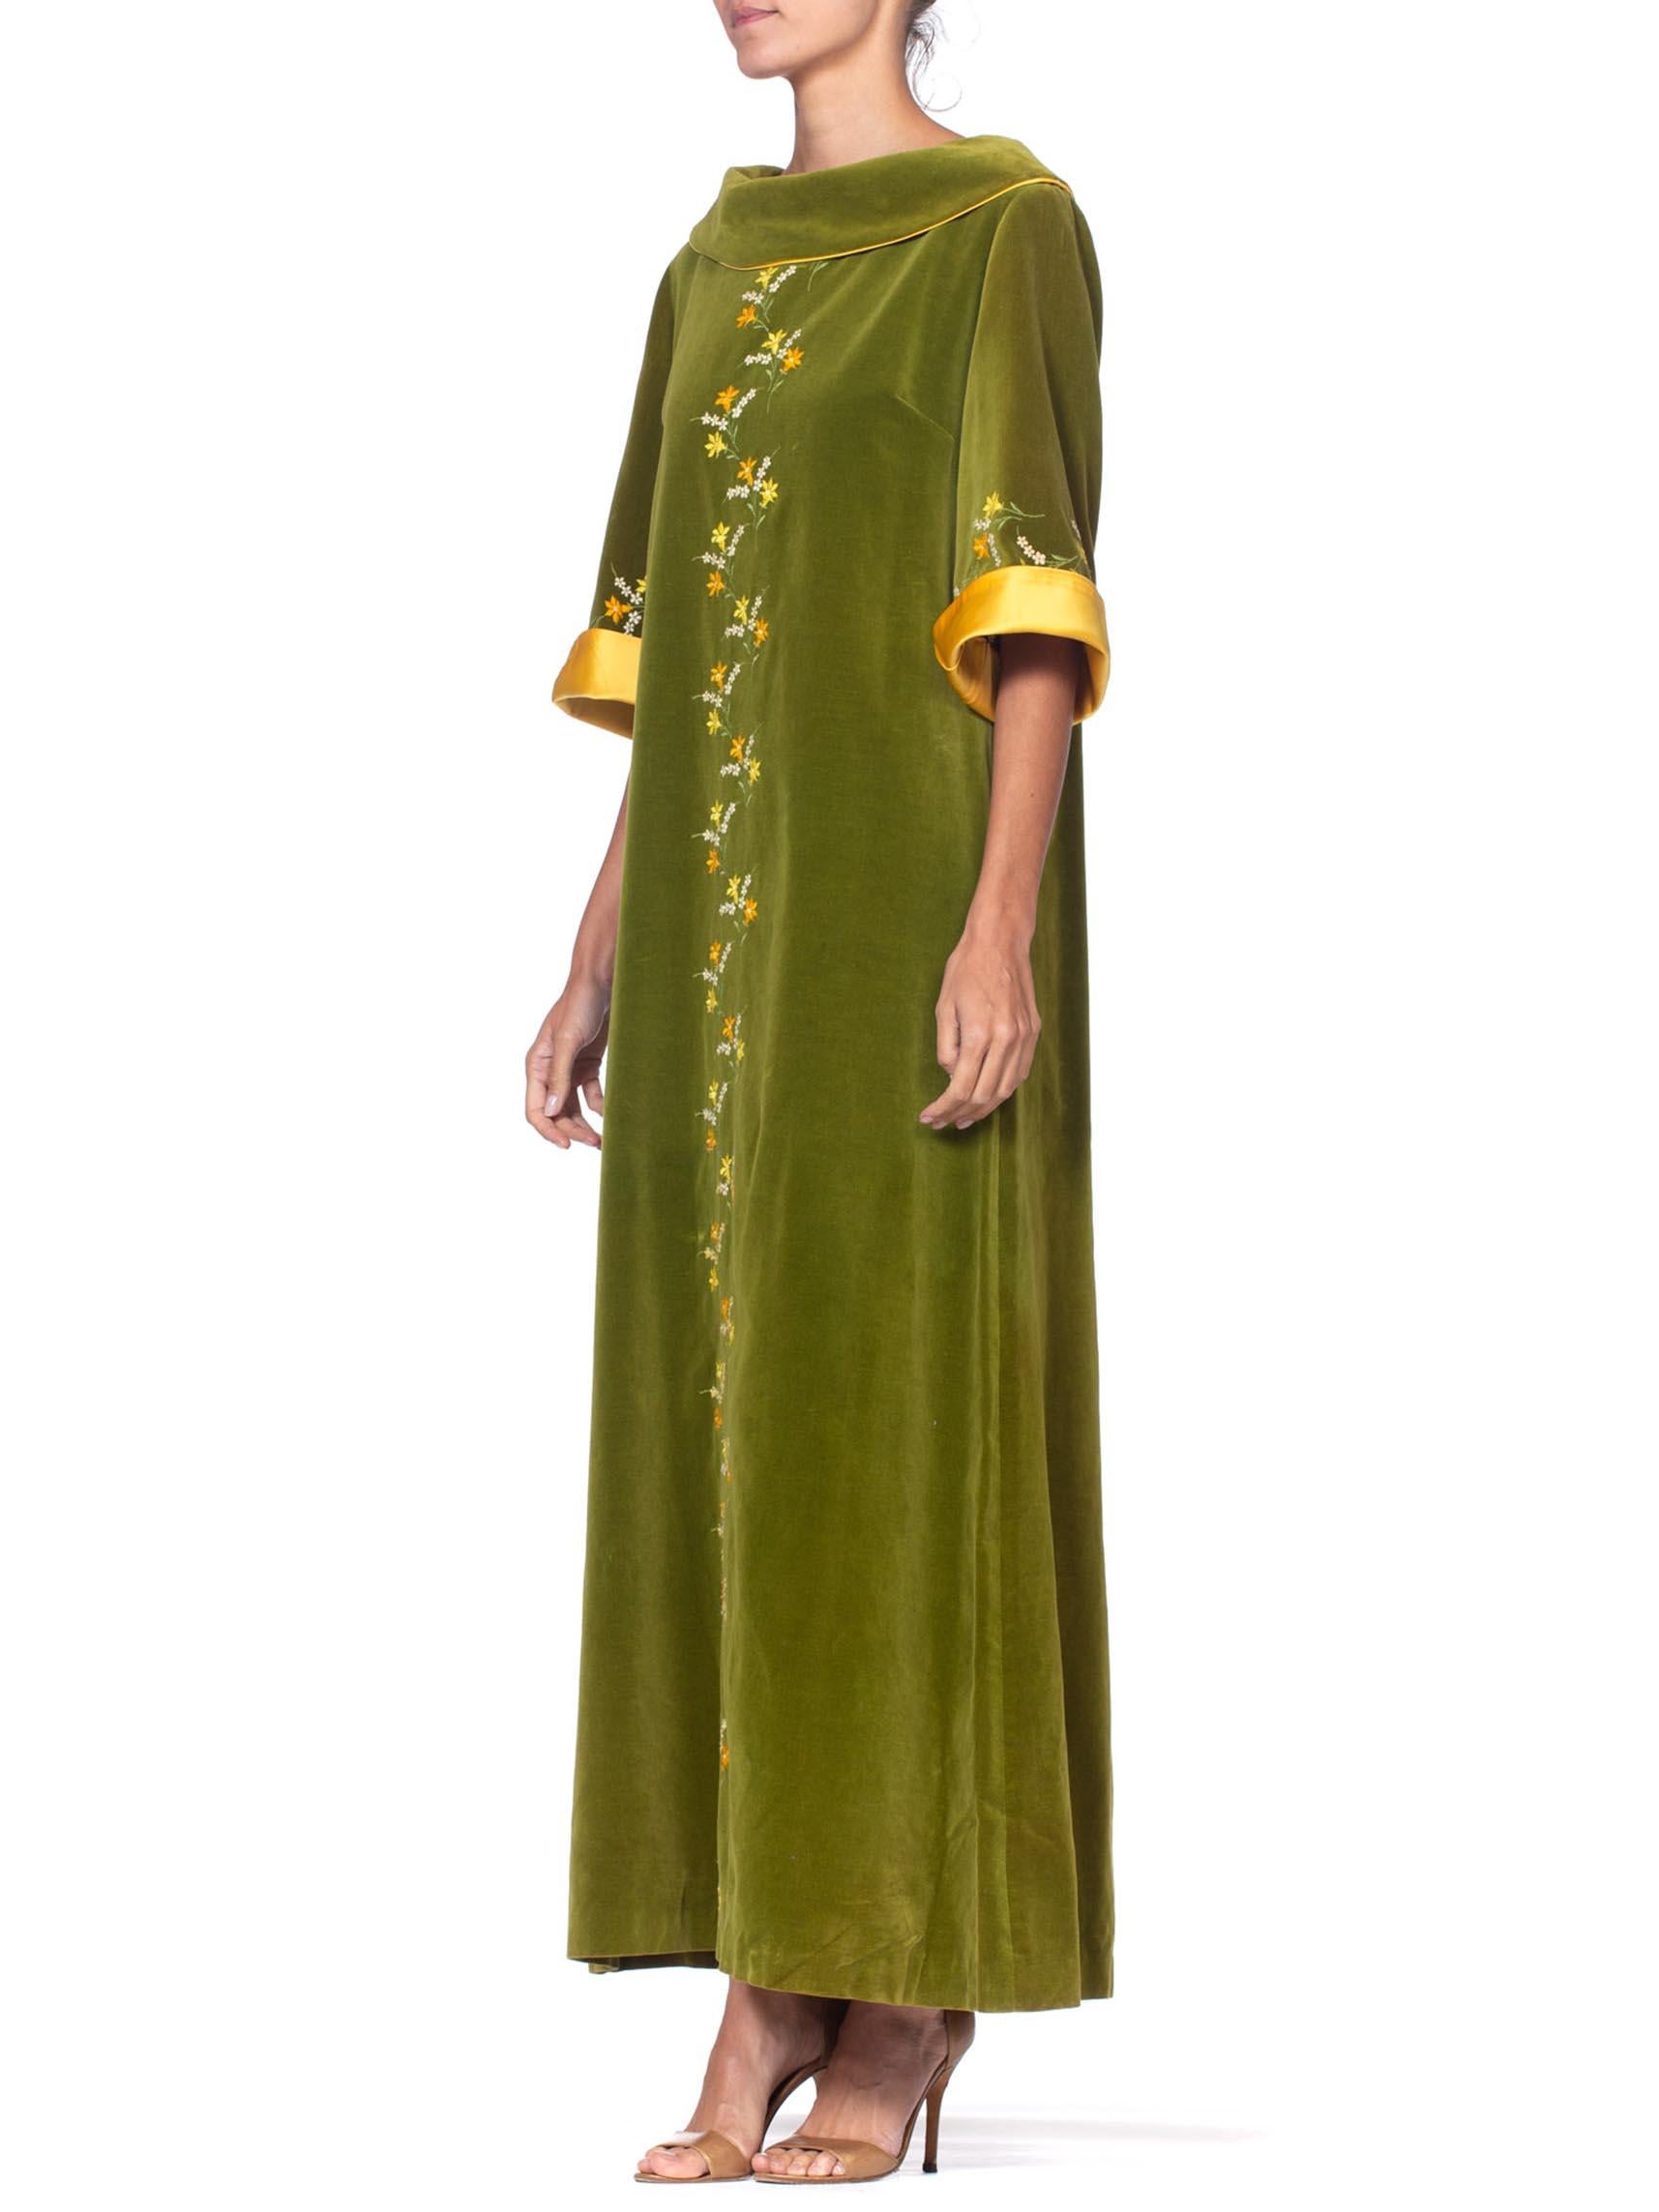 olive green floral dress